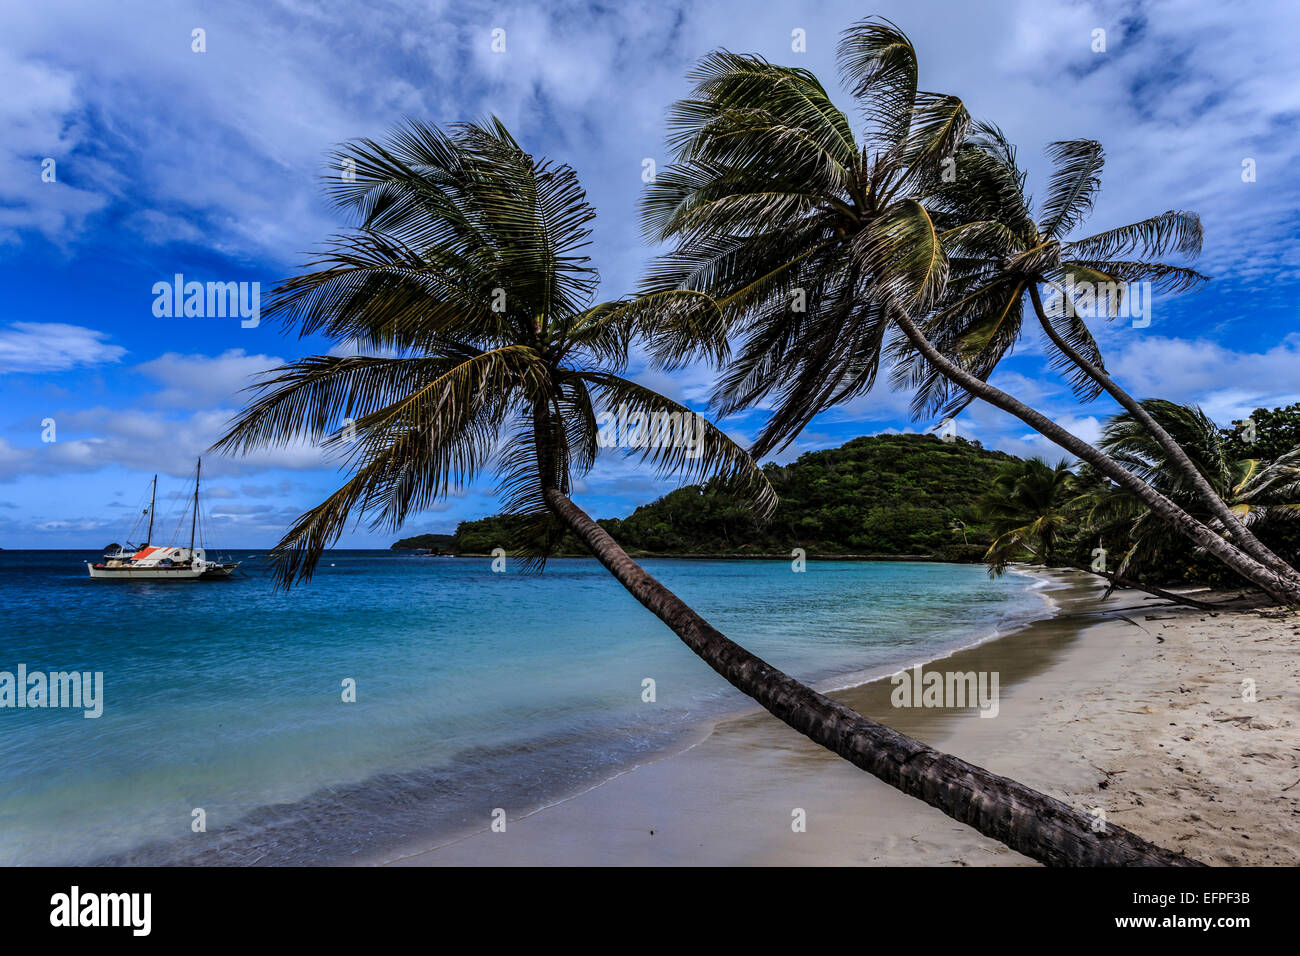 Palmeras y playas desiertas, Saltwhistle Bay, Mayreau, granadinas de San Vicente, las Islas de Barlovento, Antillas, Caribe Foto de stock